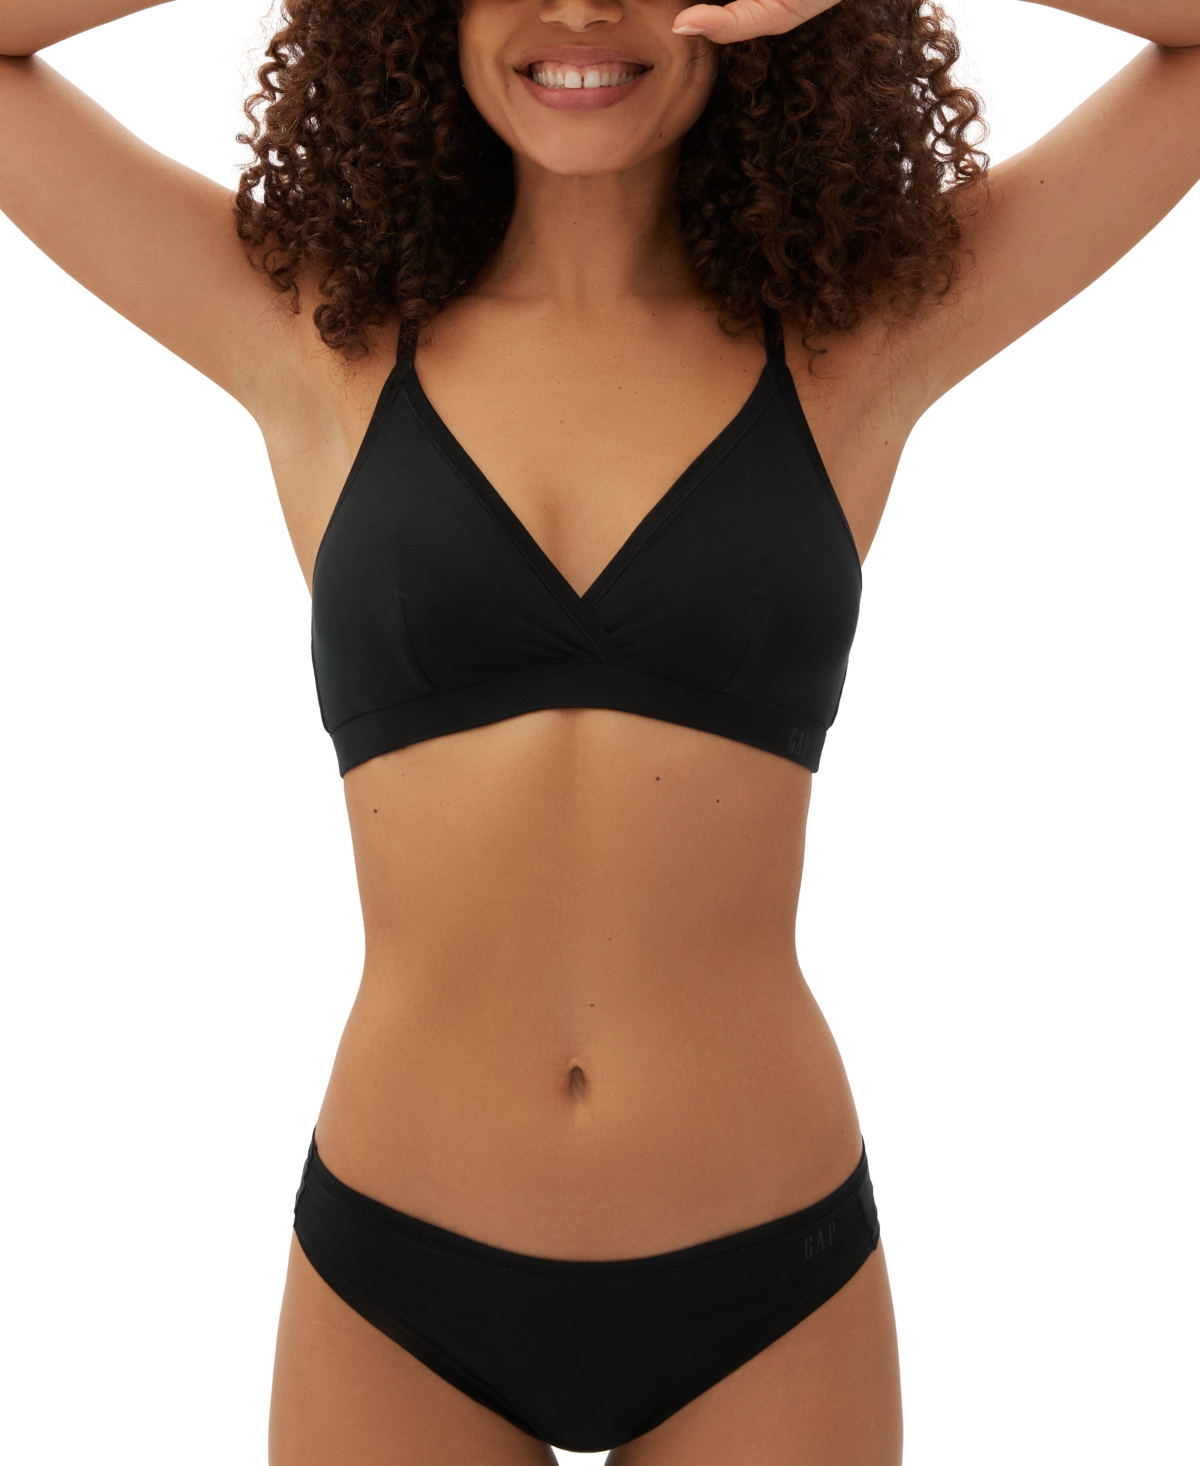 Gap Body Women's Everyday Essentials Laser Bonded Thong Underwear Gpw00383 In True Black